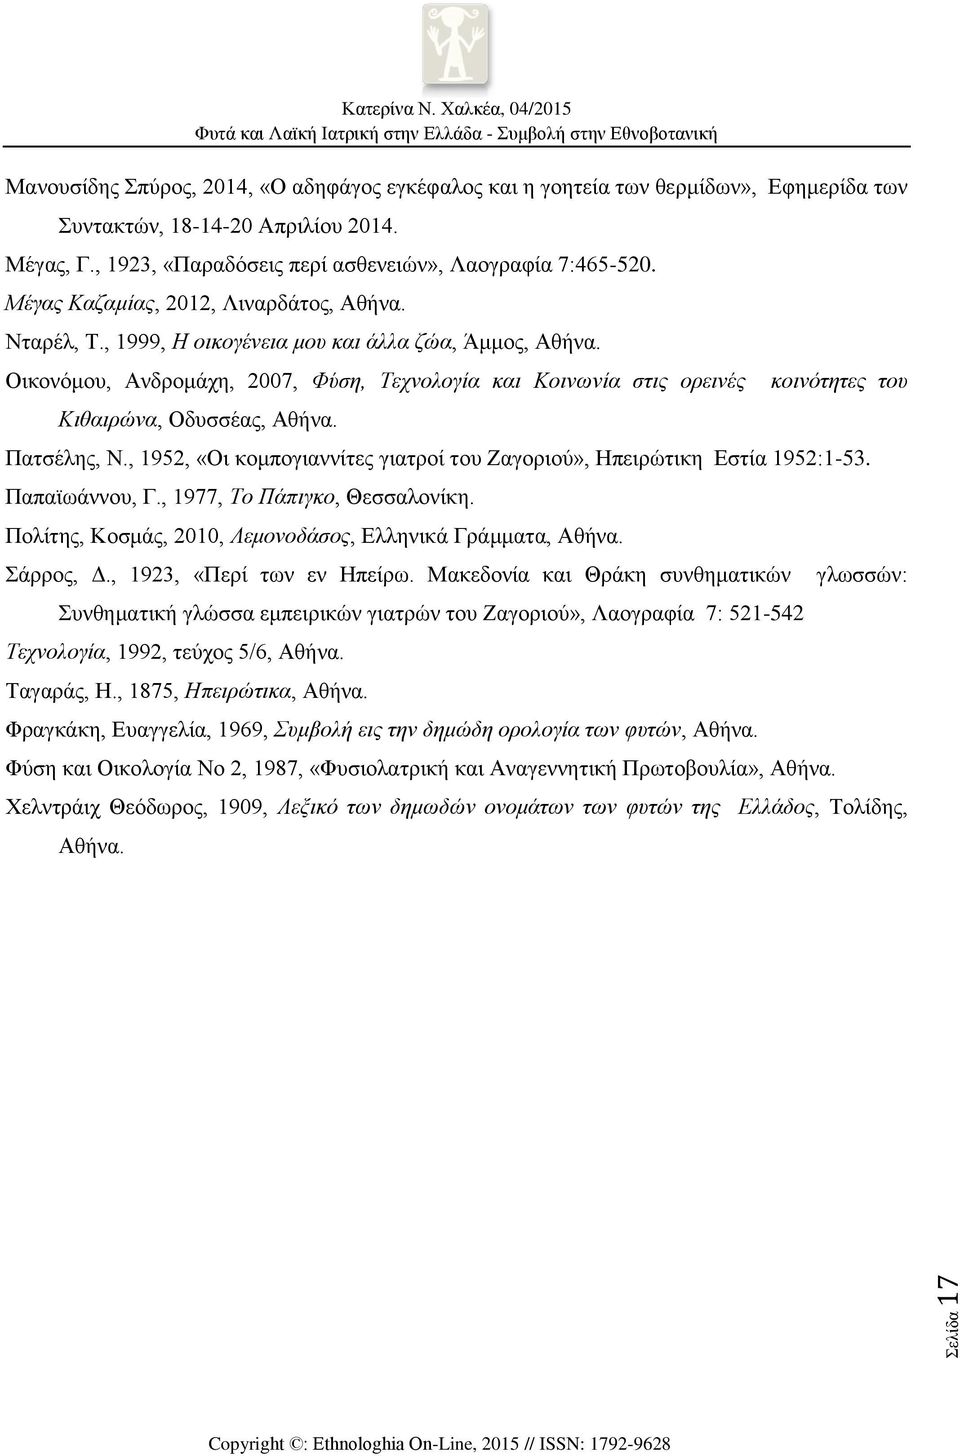 Οικονόμου, Ανδρομάχη, 2007, Φύση, Τεχνολογία και Κοινωνία στις ορεινές Κιθαιρώνα, Οδυσσέας, Αθήνα. κοινότητες του Πατσέλης, Ν.